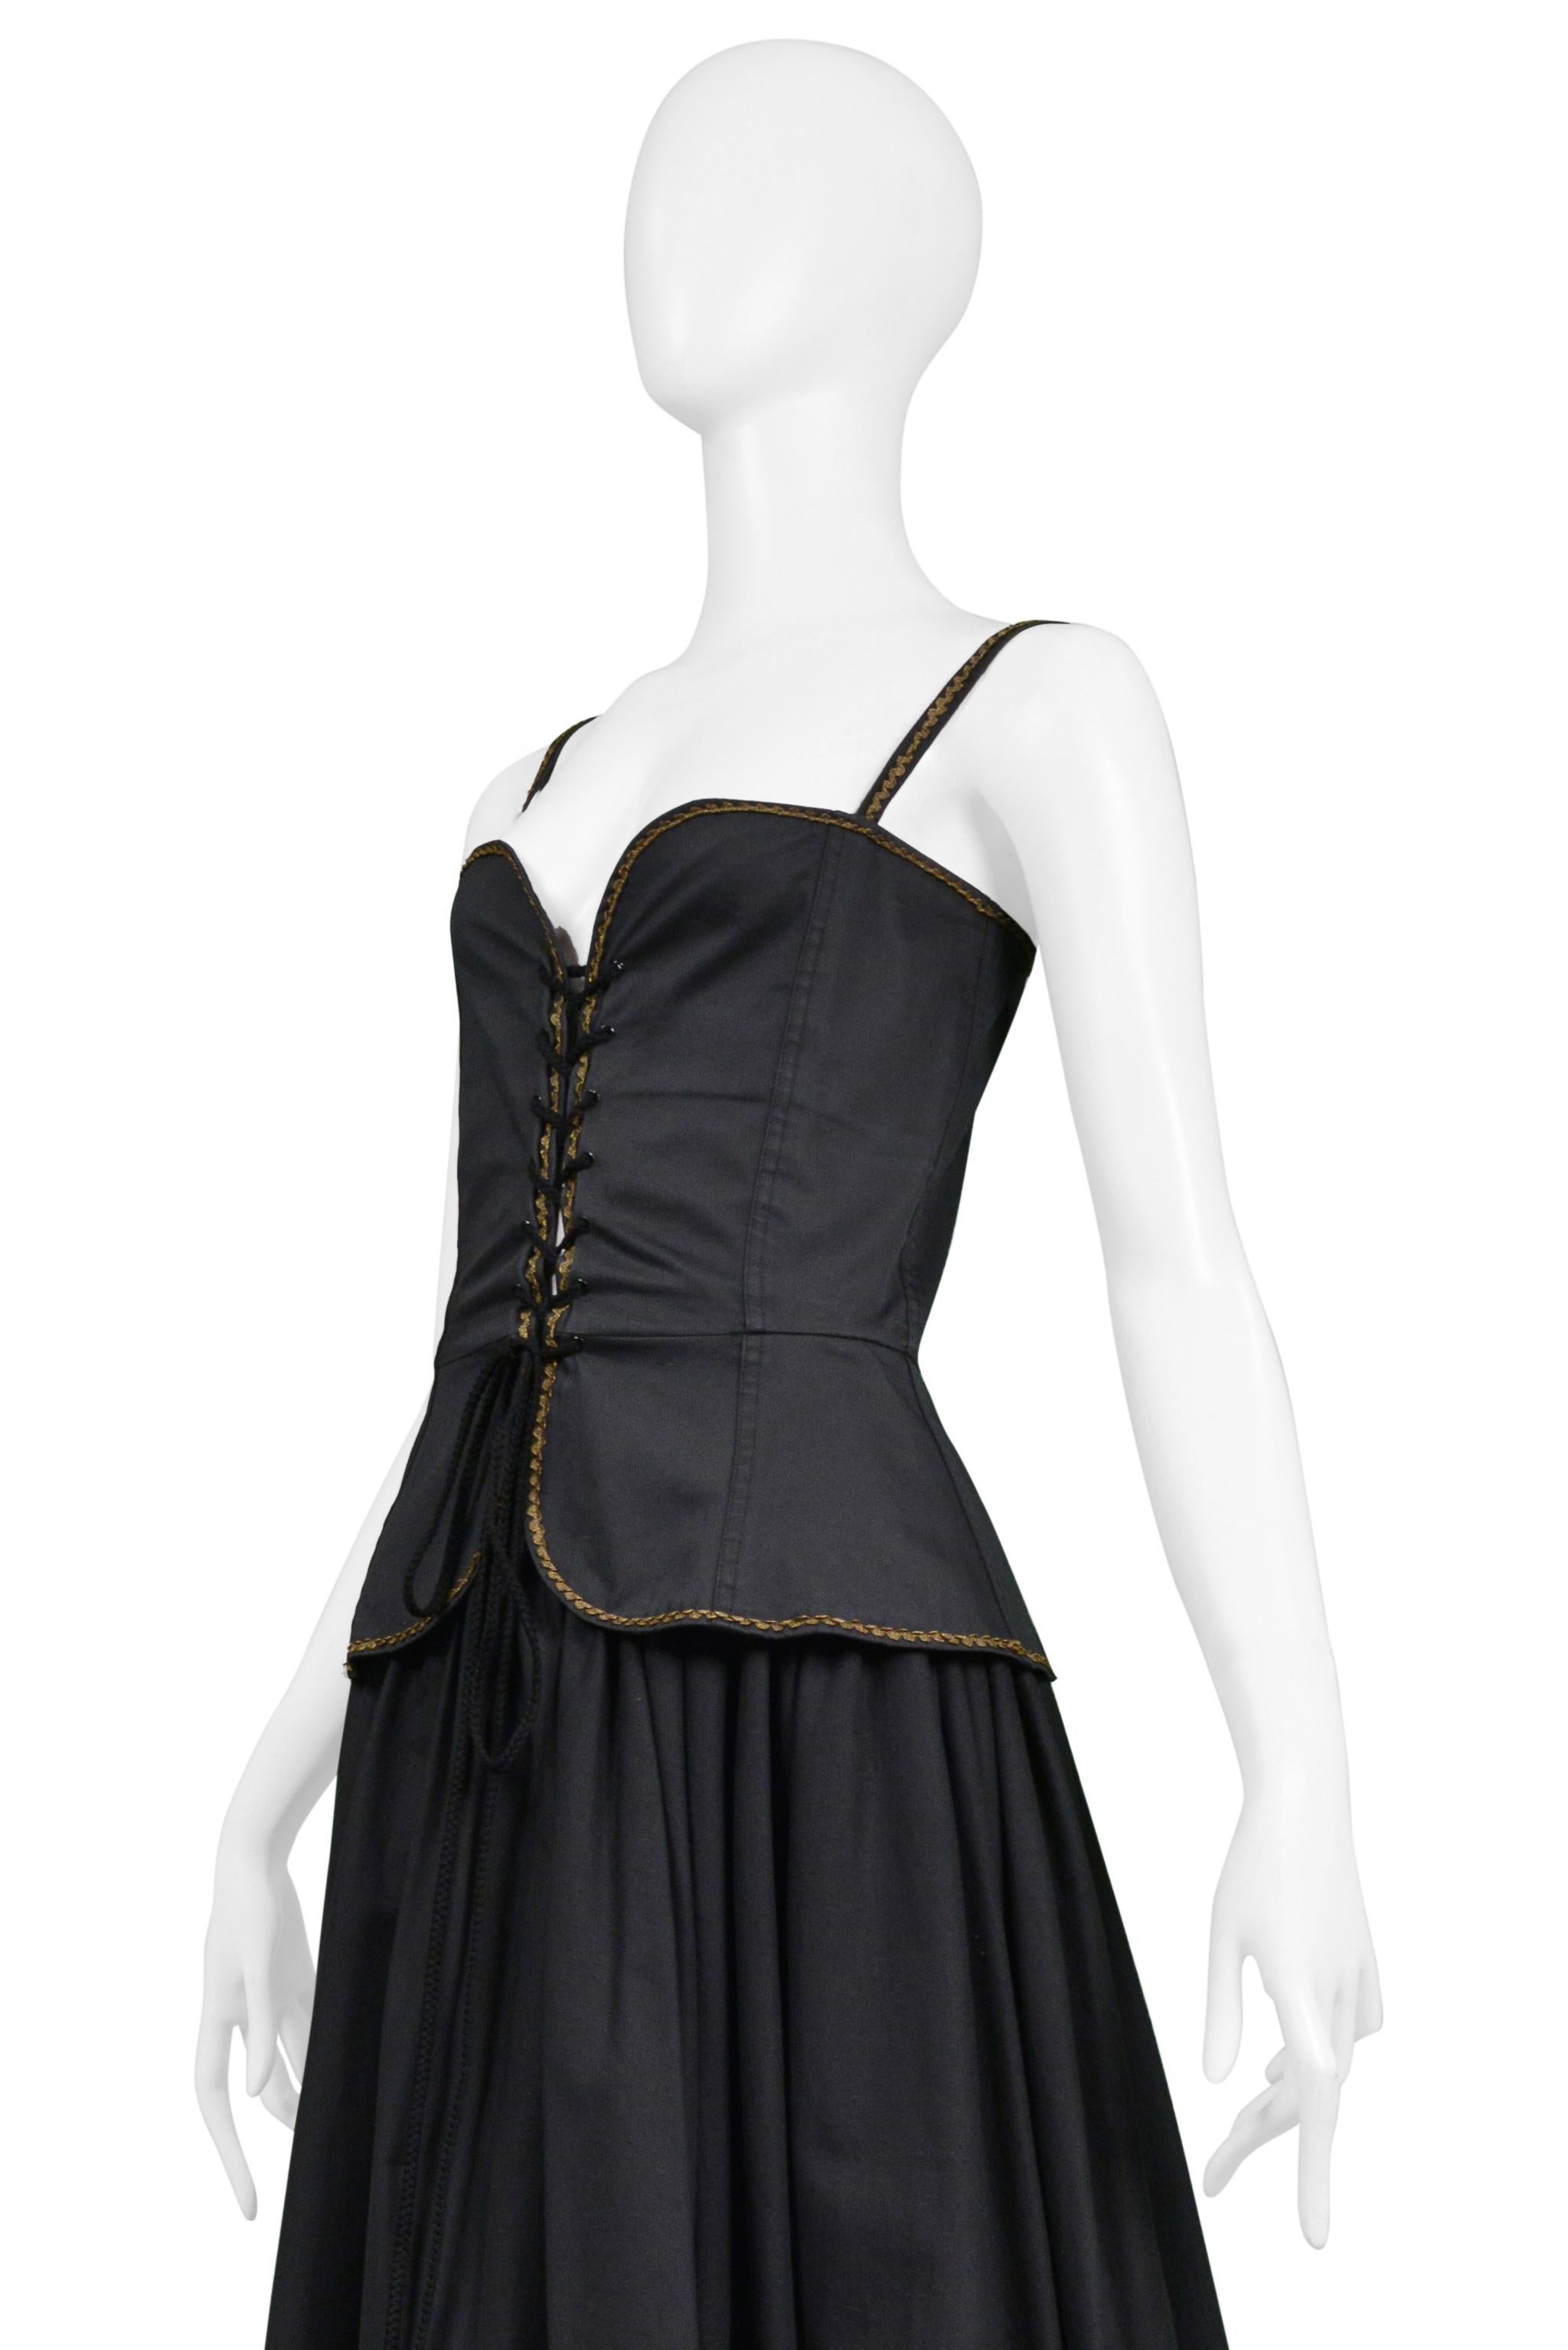 Yves Saint Laurent Top corset noir et or et jupe paysanne fantaisie 1970 Pour femmes en vente